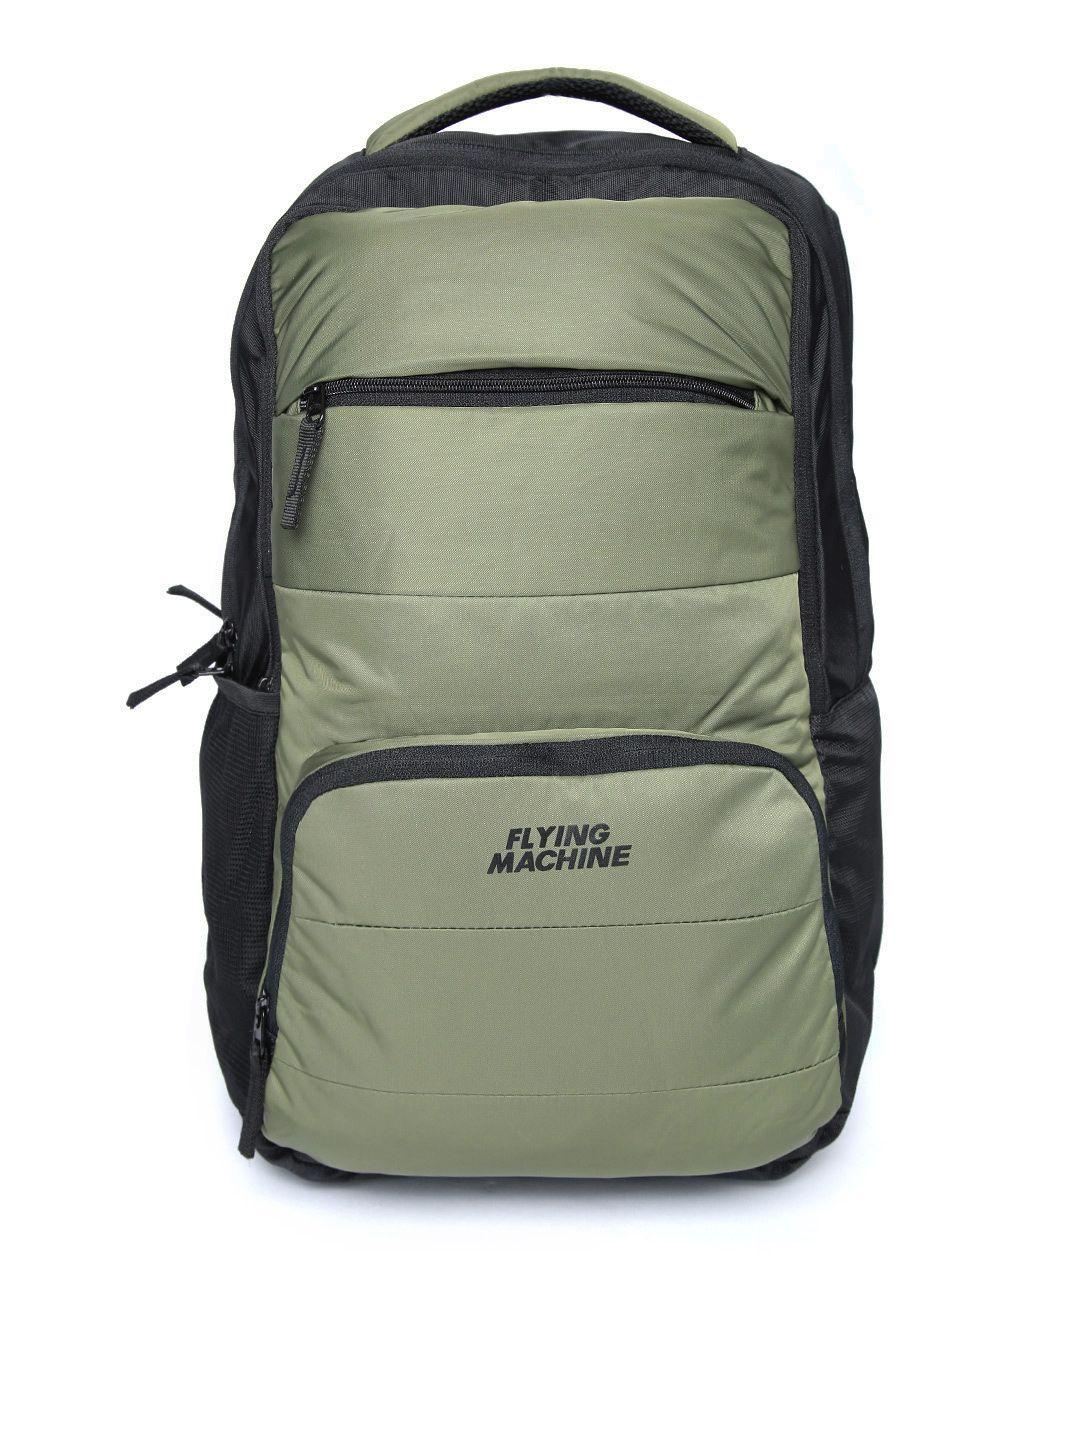 flying-machine-men-olive-green-&-black-solid-laptop-backpack